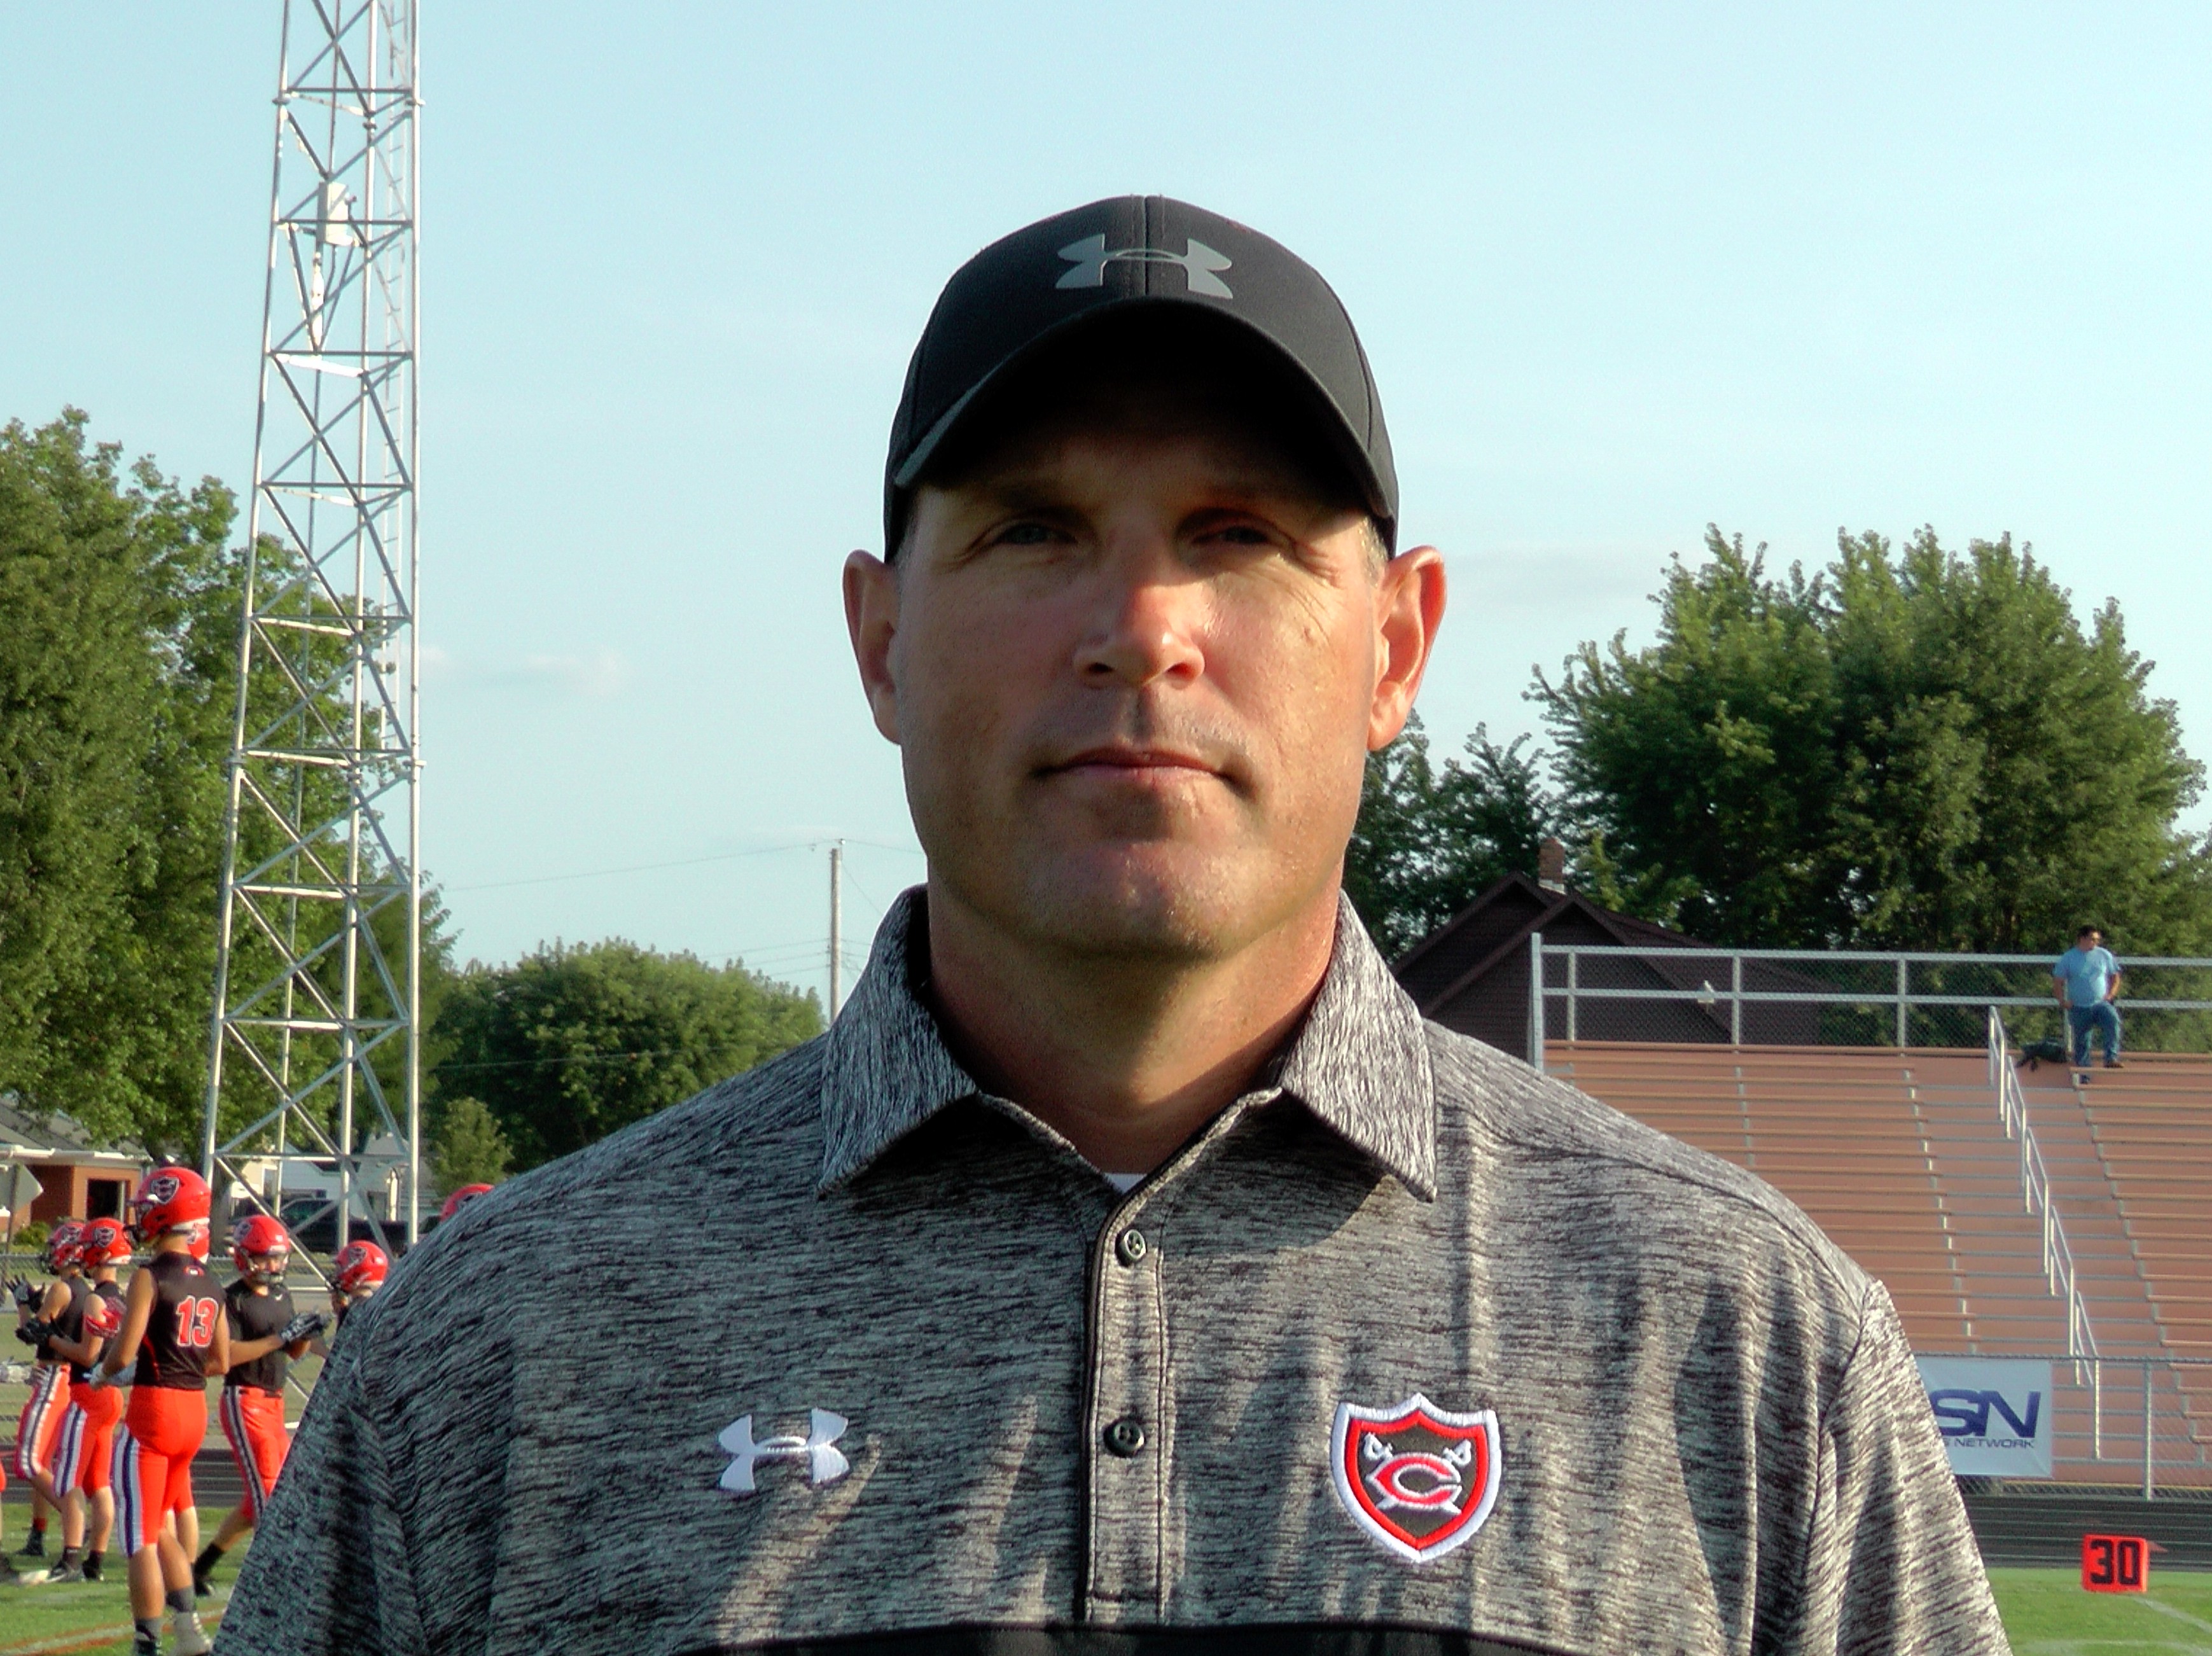 Coach Leichty